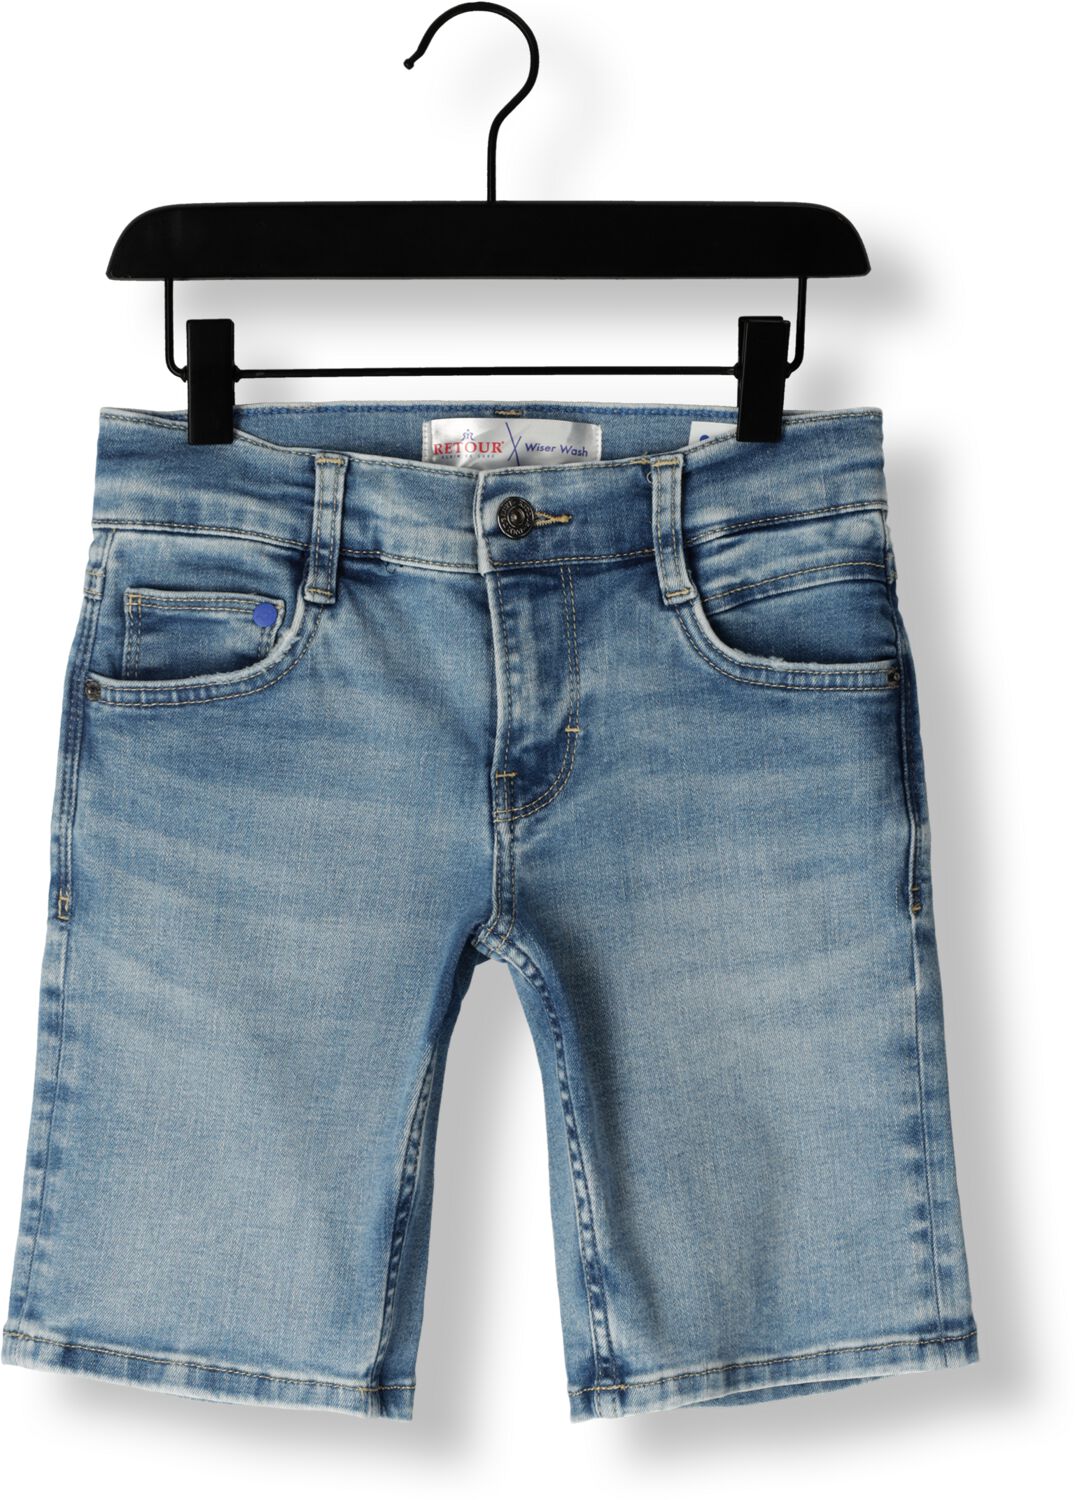 Retour Jeans denim short Reven Vintage light blue denim Korte broek Blauw Jongens Stretchdenim 158